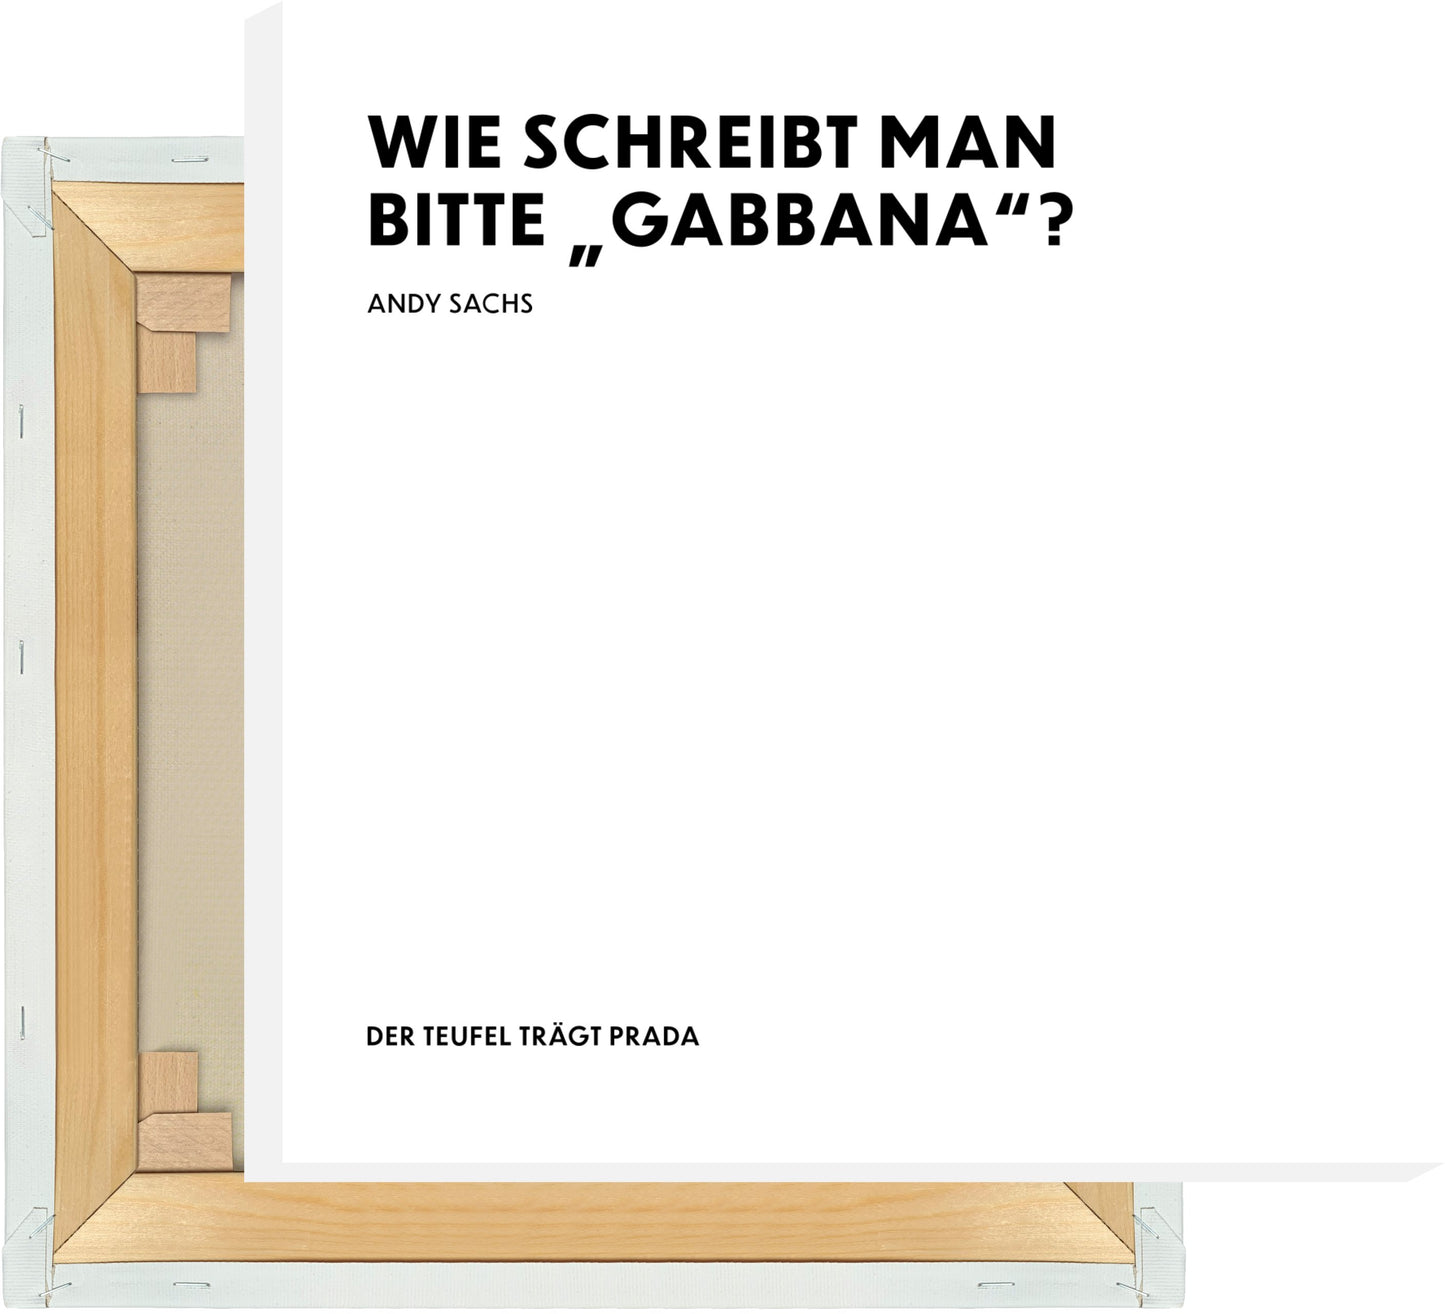 Leinwand Wie schreibt man bitte "Gabbana"? - Andy Sachs - The Devil Wears Prada (Der Teufel trägt Prada)